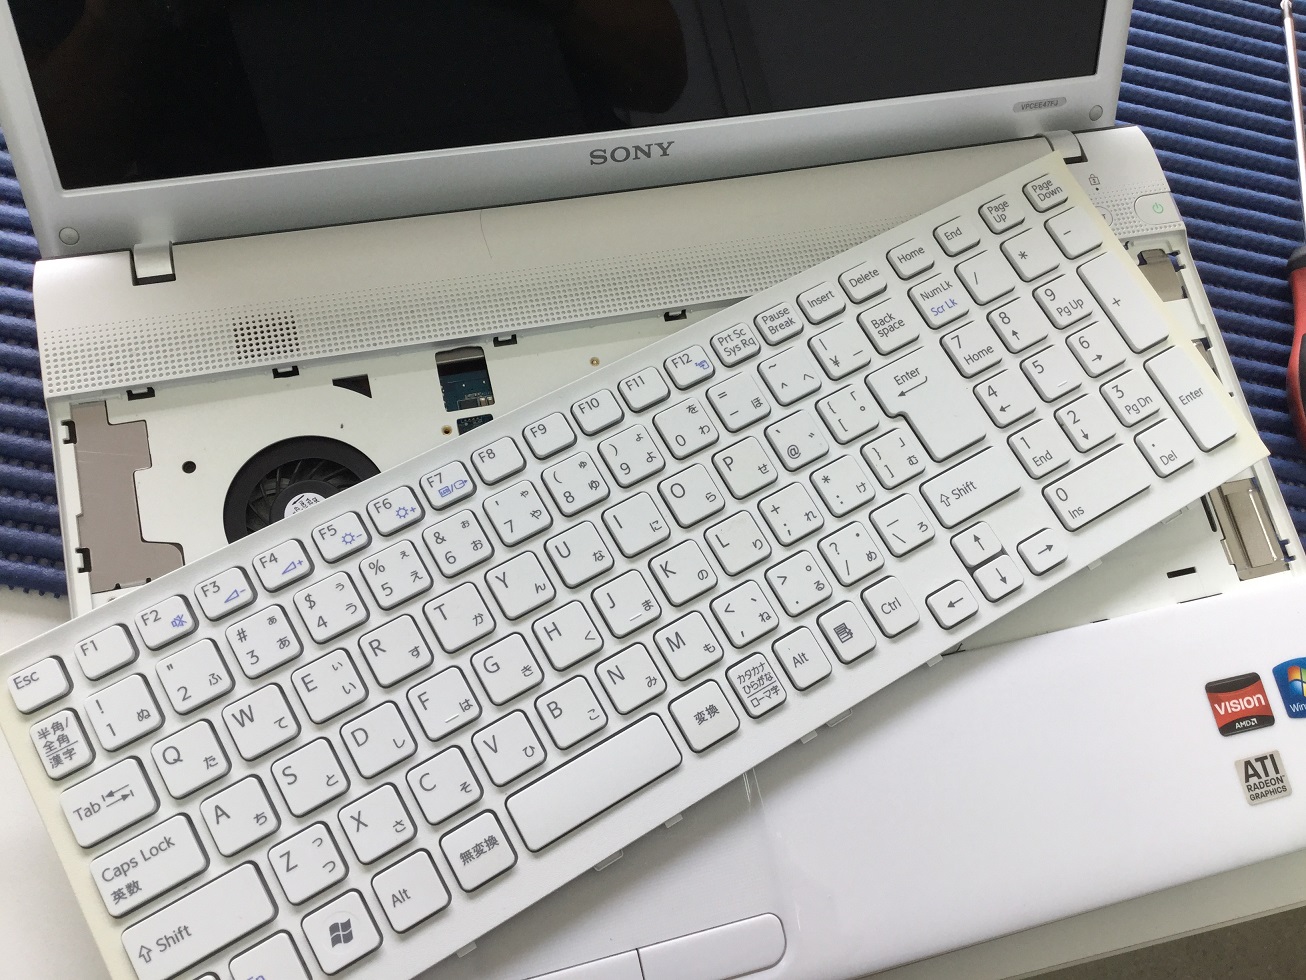 ソニー VPCEE47FJ キーボード交換 | スピード修理の熊本パソコン本舗